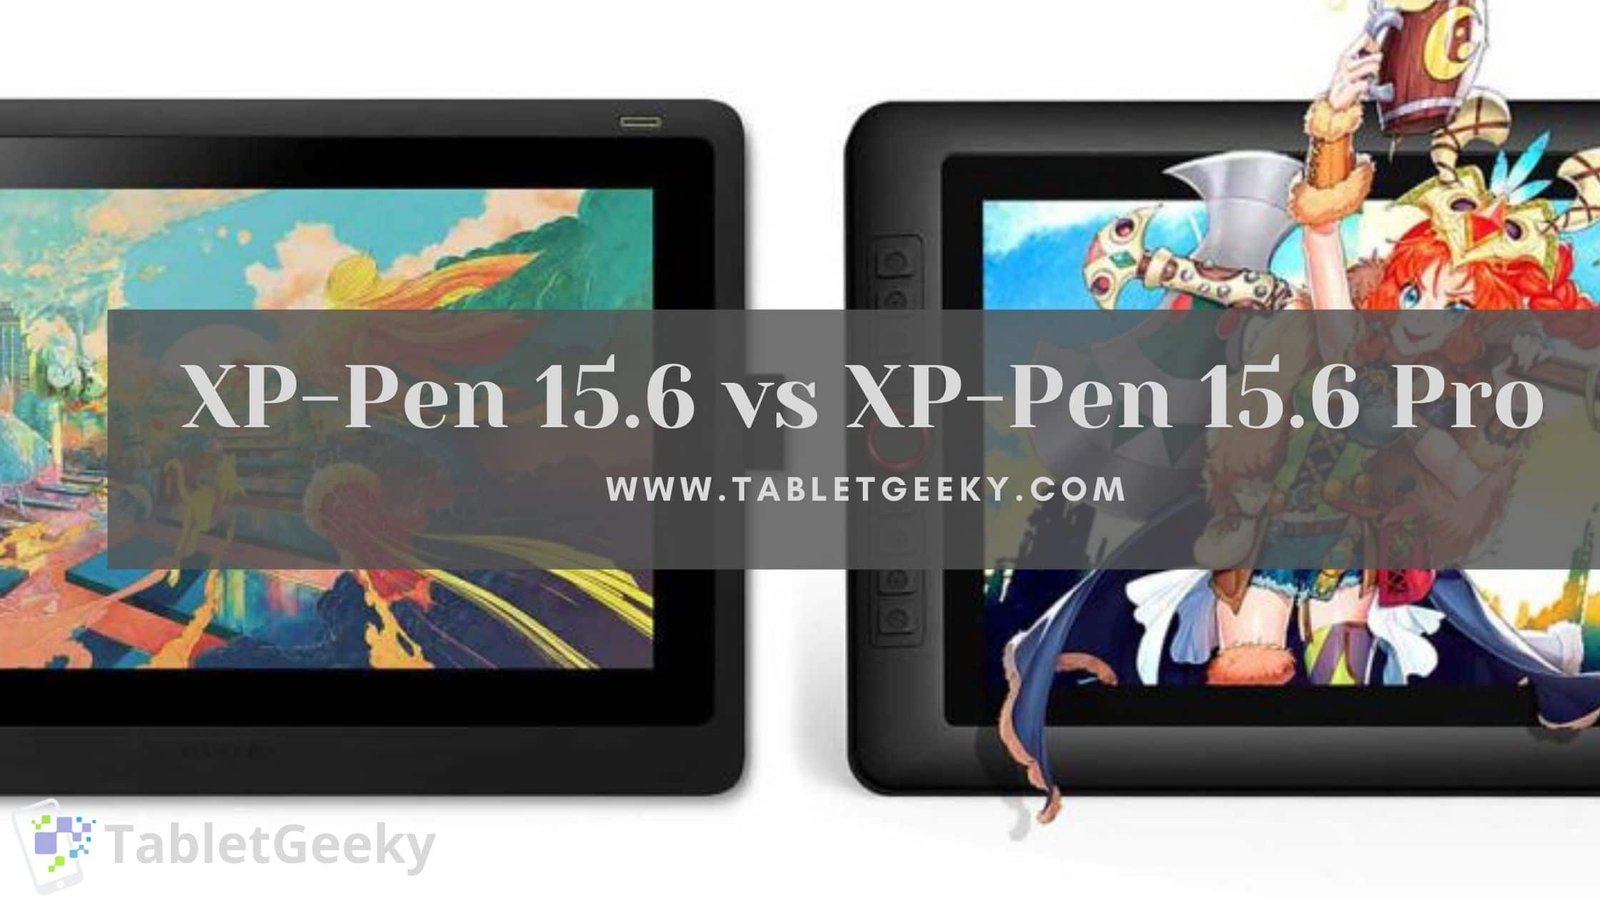 xp-pen artist 15.6 vs pro